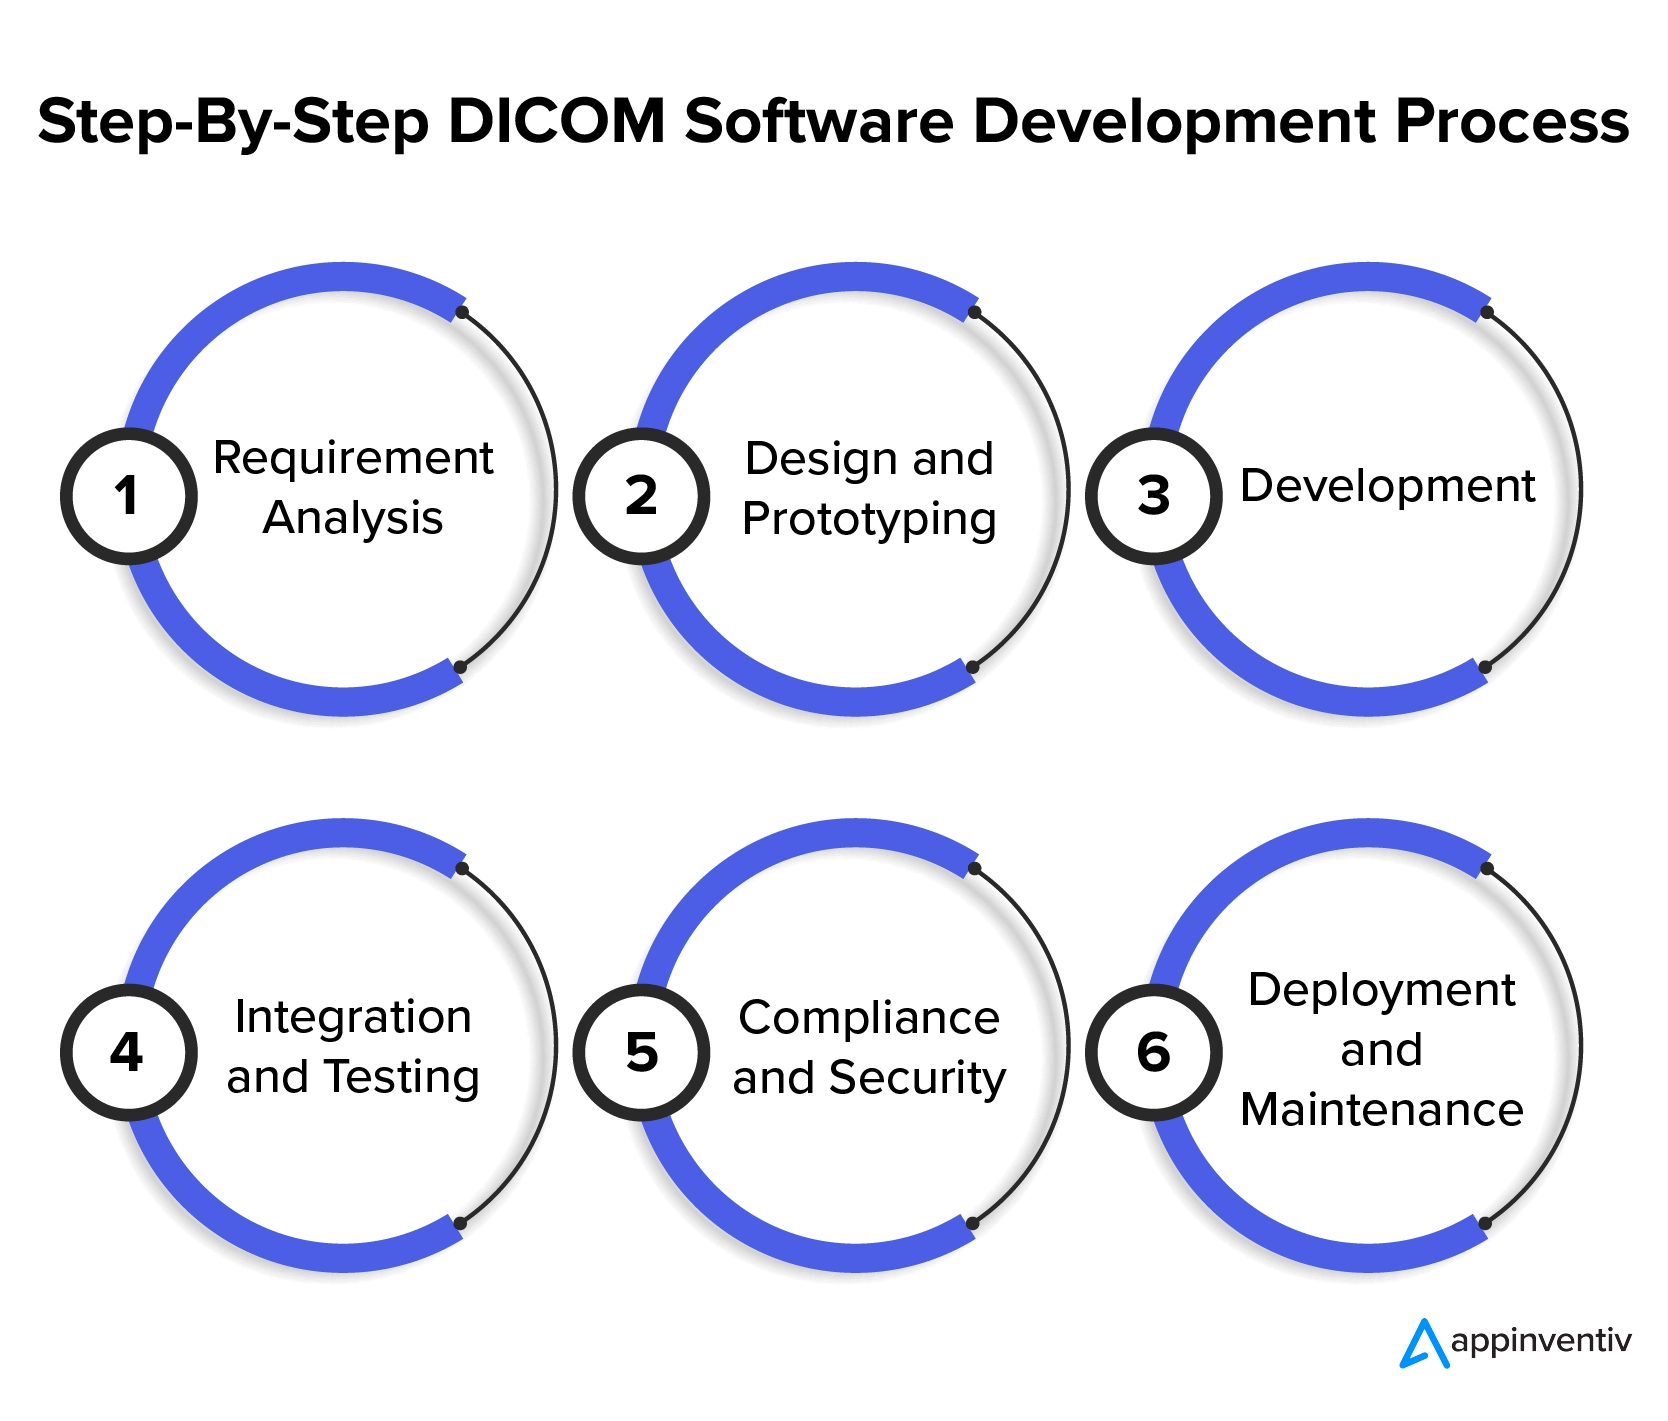 Processus de développement de logiciels DICOM étape par étape